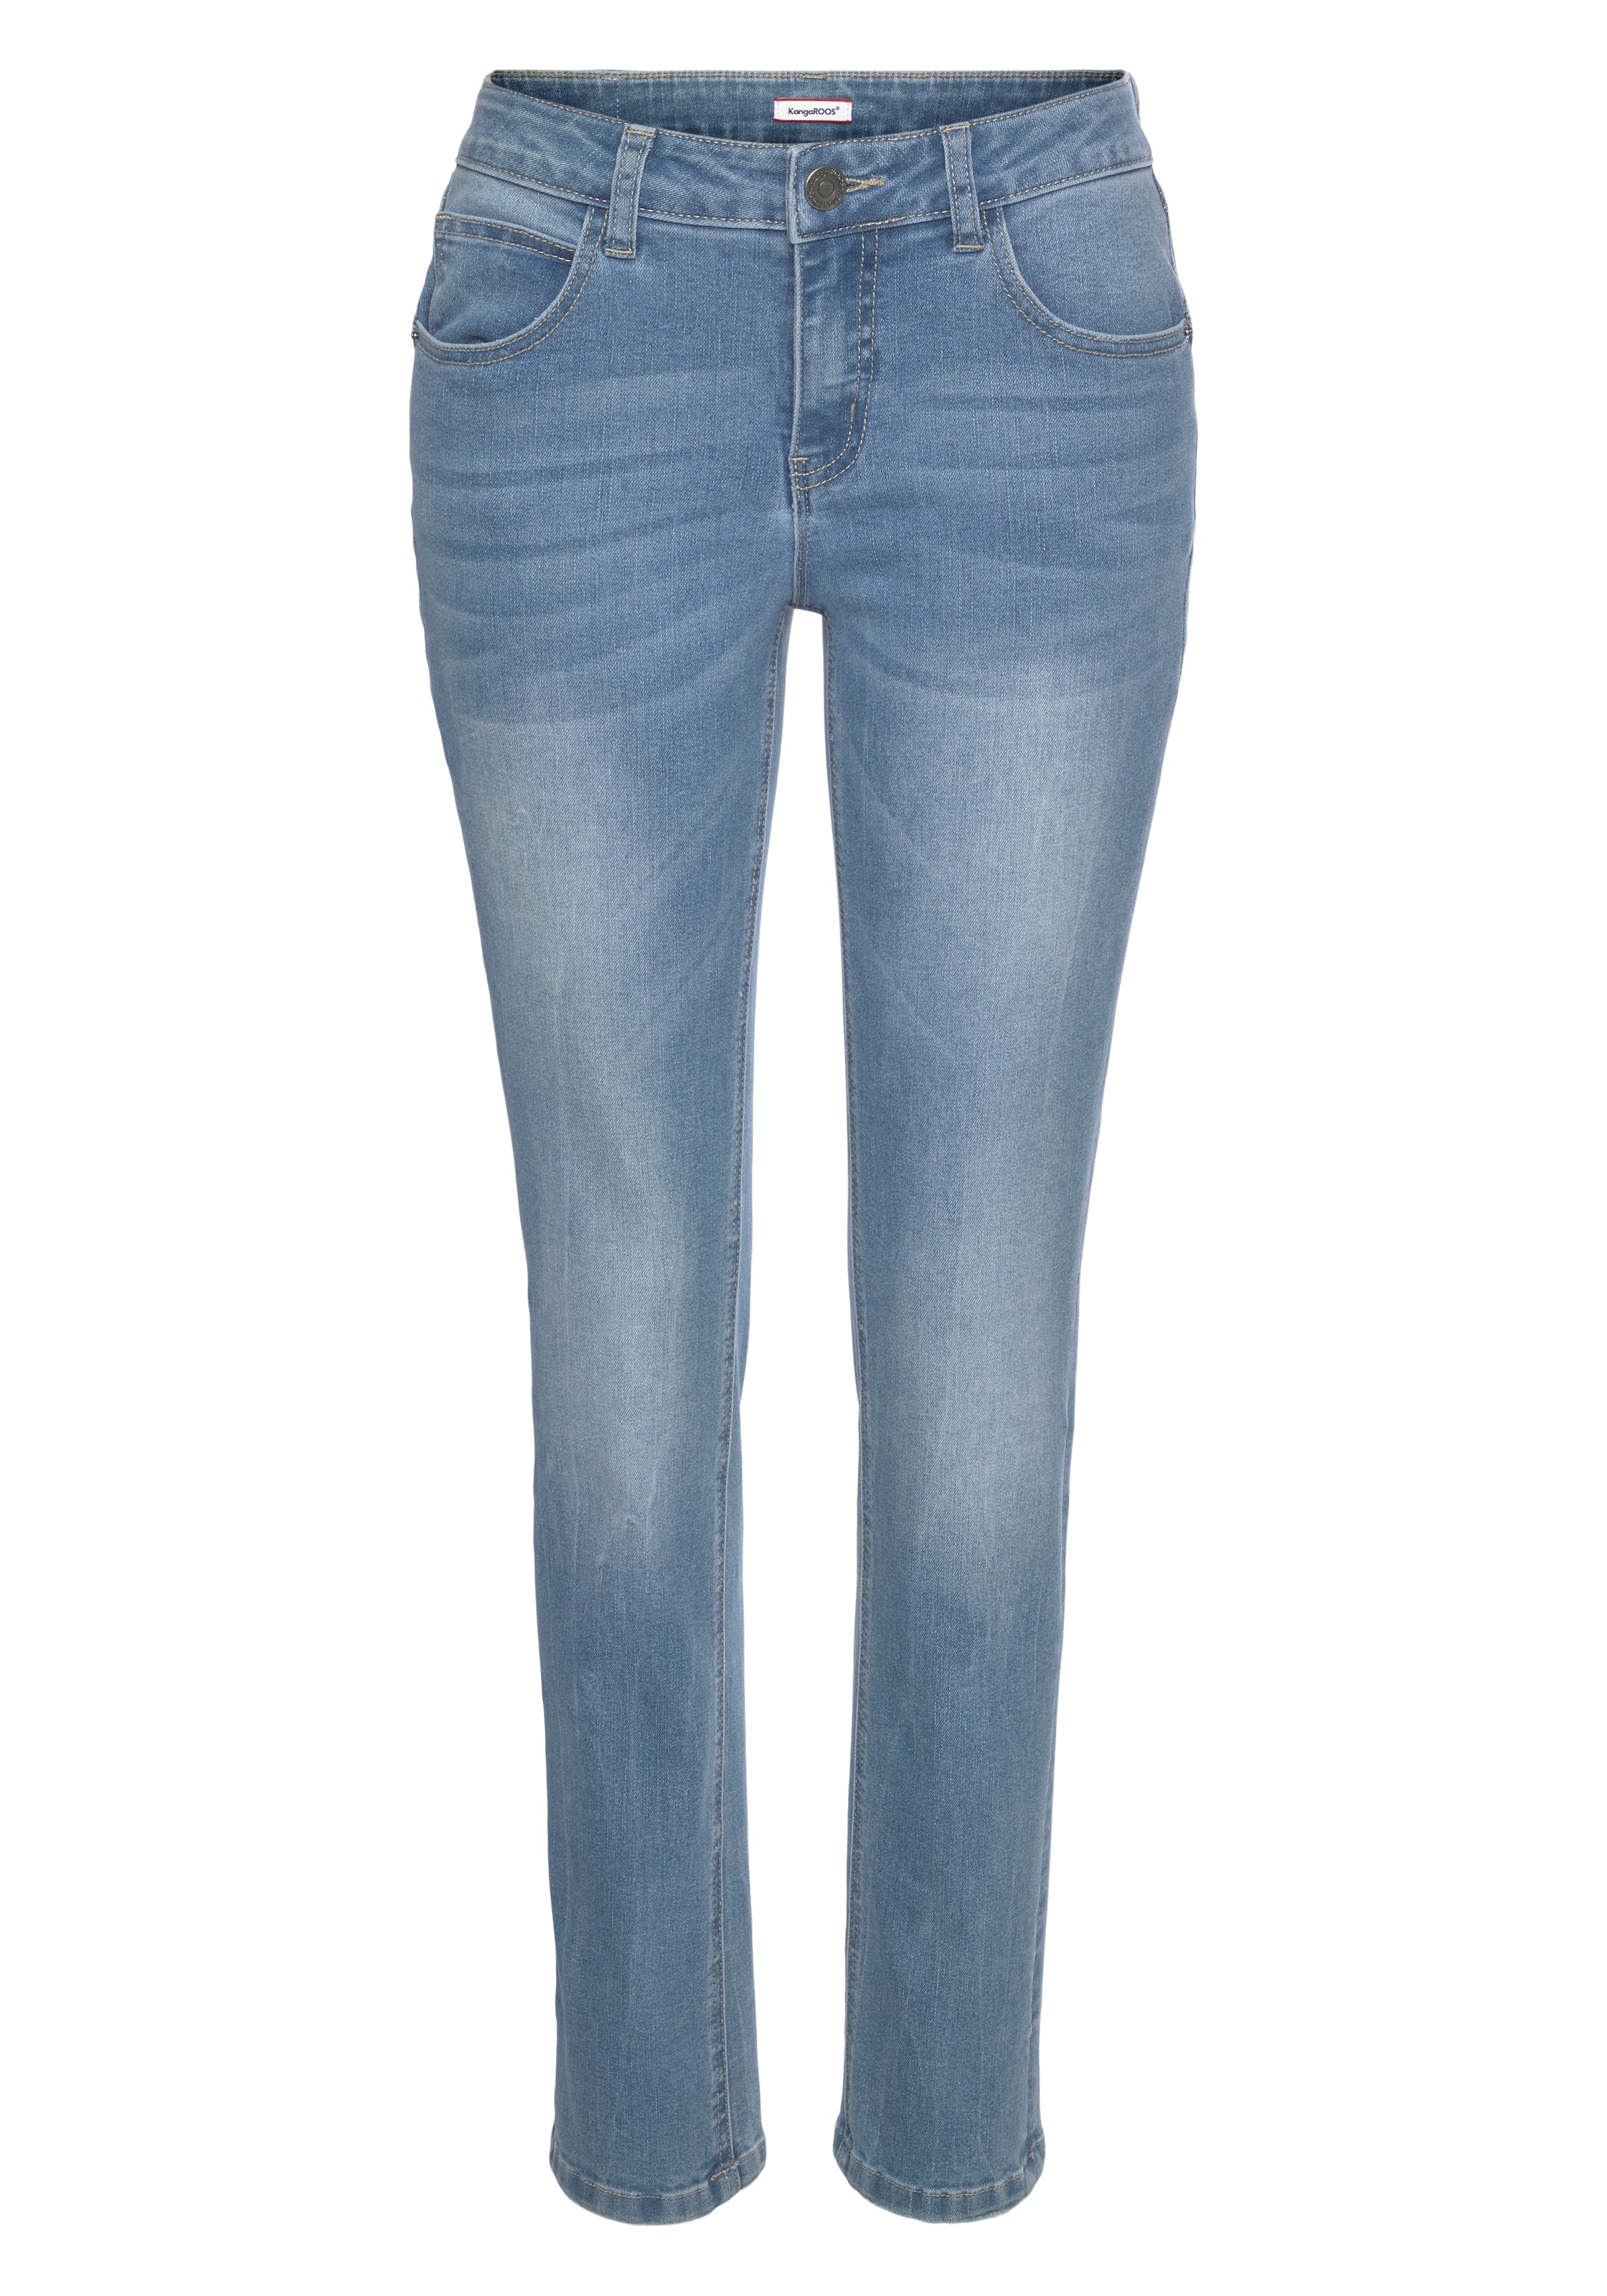 »RELAX-FIT Relax-fit-Jeans online KangaROOS HIGH WAIST« bestellen